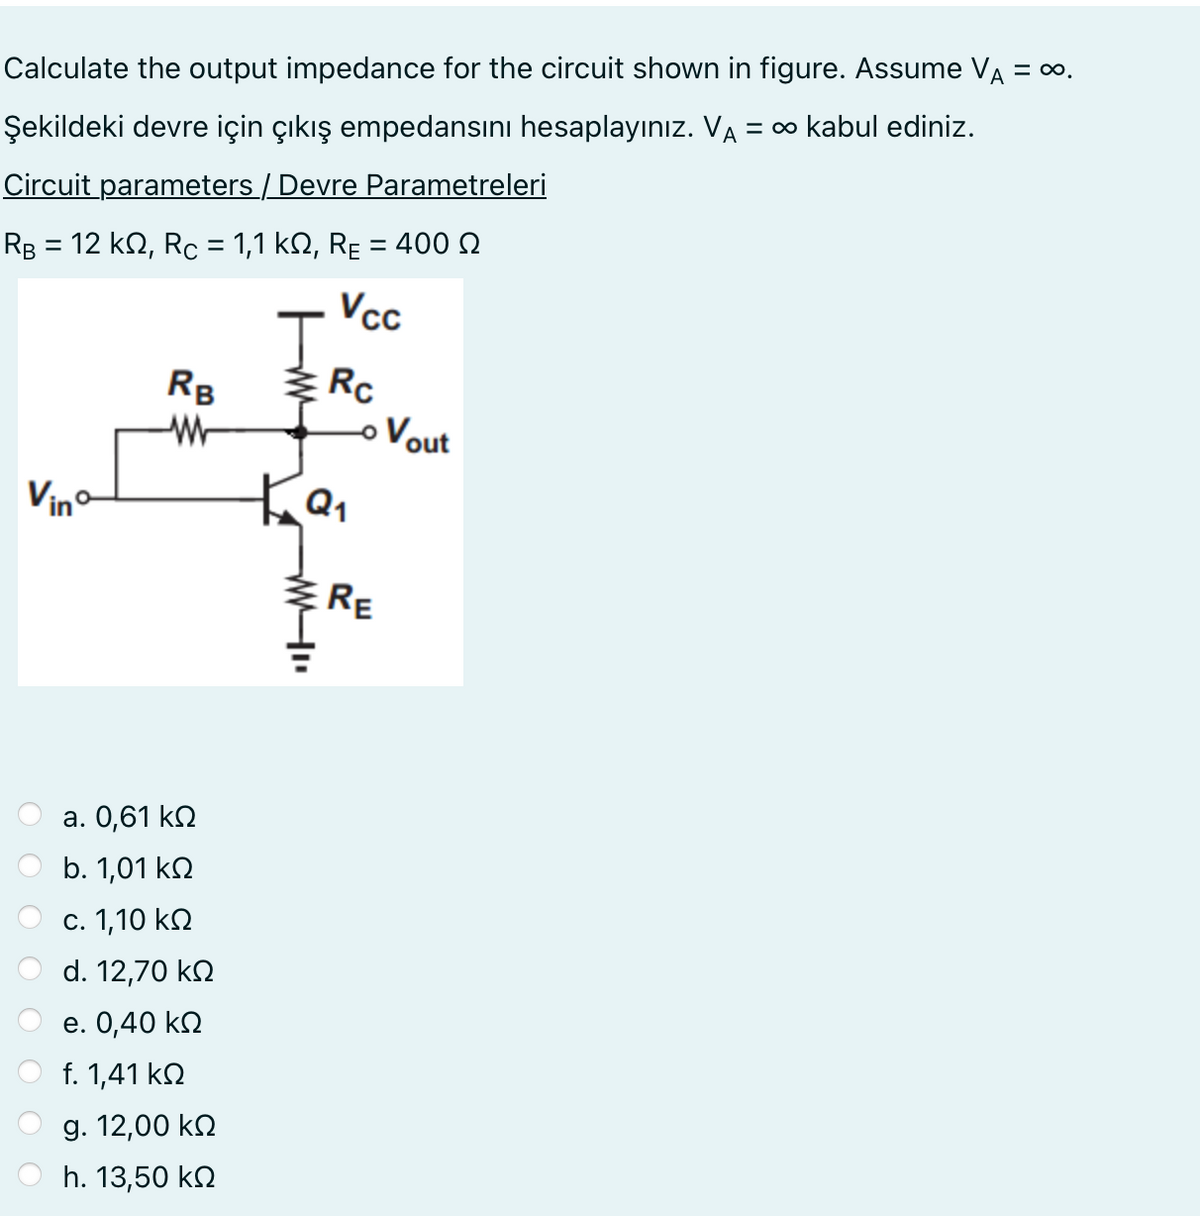 Calculate the output impedance for the circuit shown in figure. Assume VÀ = ∞.
Şekildeki devre için çıkış empedansını hesaplayınız. VA = ∞ kabul ediniz.
Circuit parameters / Devre Parametreleri
RB = 12 ΚΩ, Rc = 1,1 ΚΩ, RE = 400 Ω
Vinº
RB
W
a. 0,61 ΚΩ
b. 1,01 ΚΩ
c. 1,10 ΚΩ
d. 12,70 ΚΩ
e. 0,40 ΚΩ
f. 1,41 ΚΩ
g. 12,00 ΚΩ
h. 13,50 ΚΩ
J
Ка
www.
Vcc
Rc
- Vout
RE